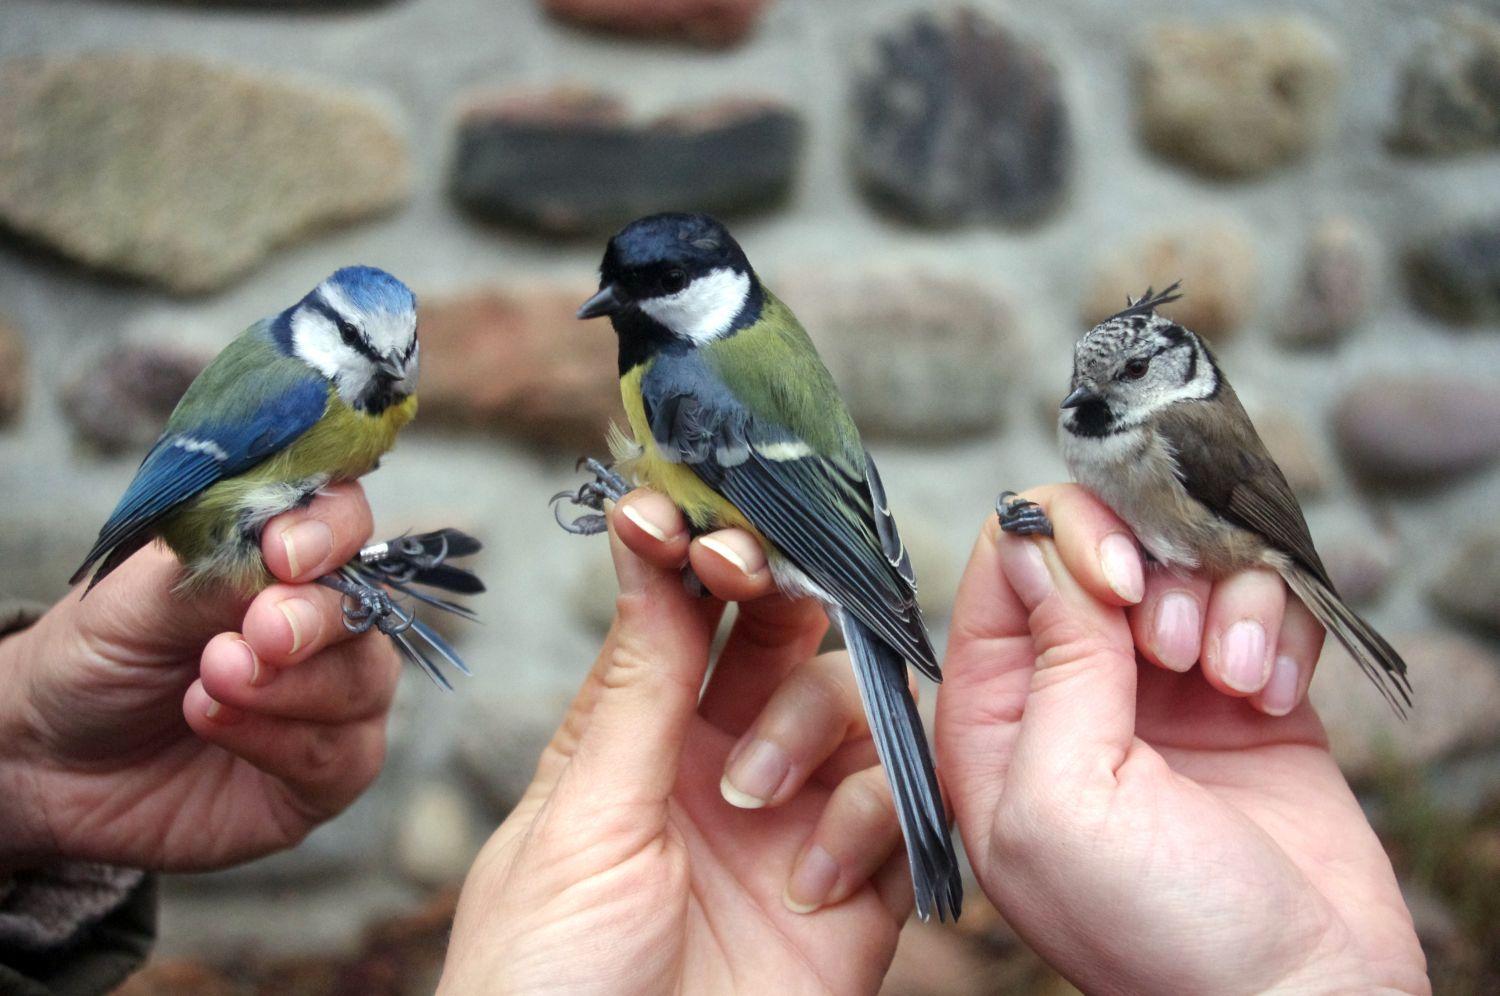 Leśny Ogród Botaniczny w Marszewie pokazy obrączkowania ptaków autor Witold Ciechanowicz